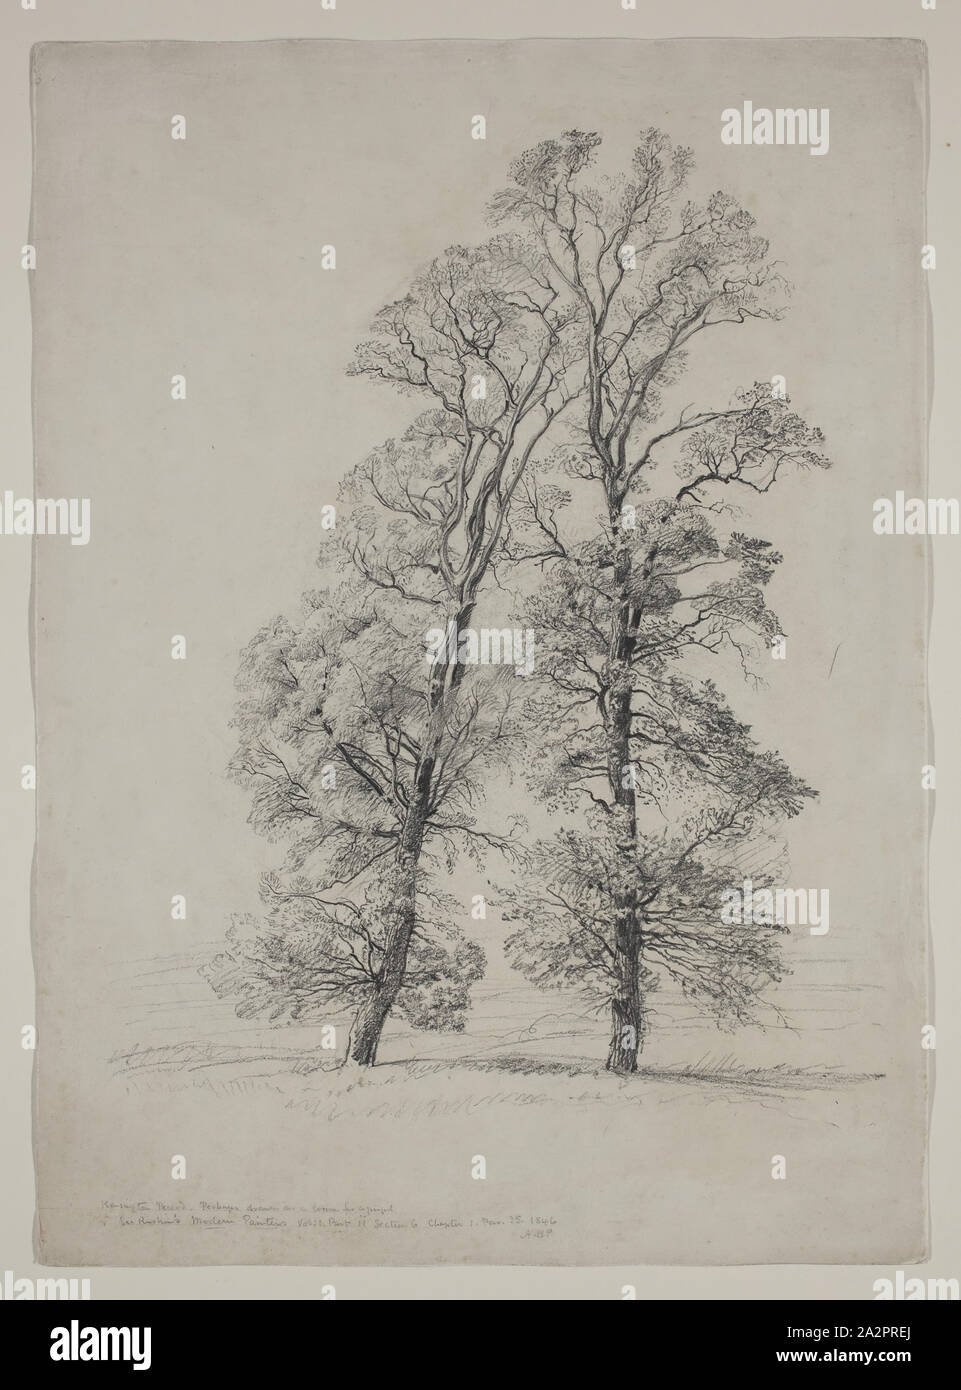 Samuel Palmer, Englisch, 1805-1881, zwei Bäume, zwischen 1805 und 1881, Graphit, Bleistift auf Papier Stockfoto